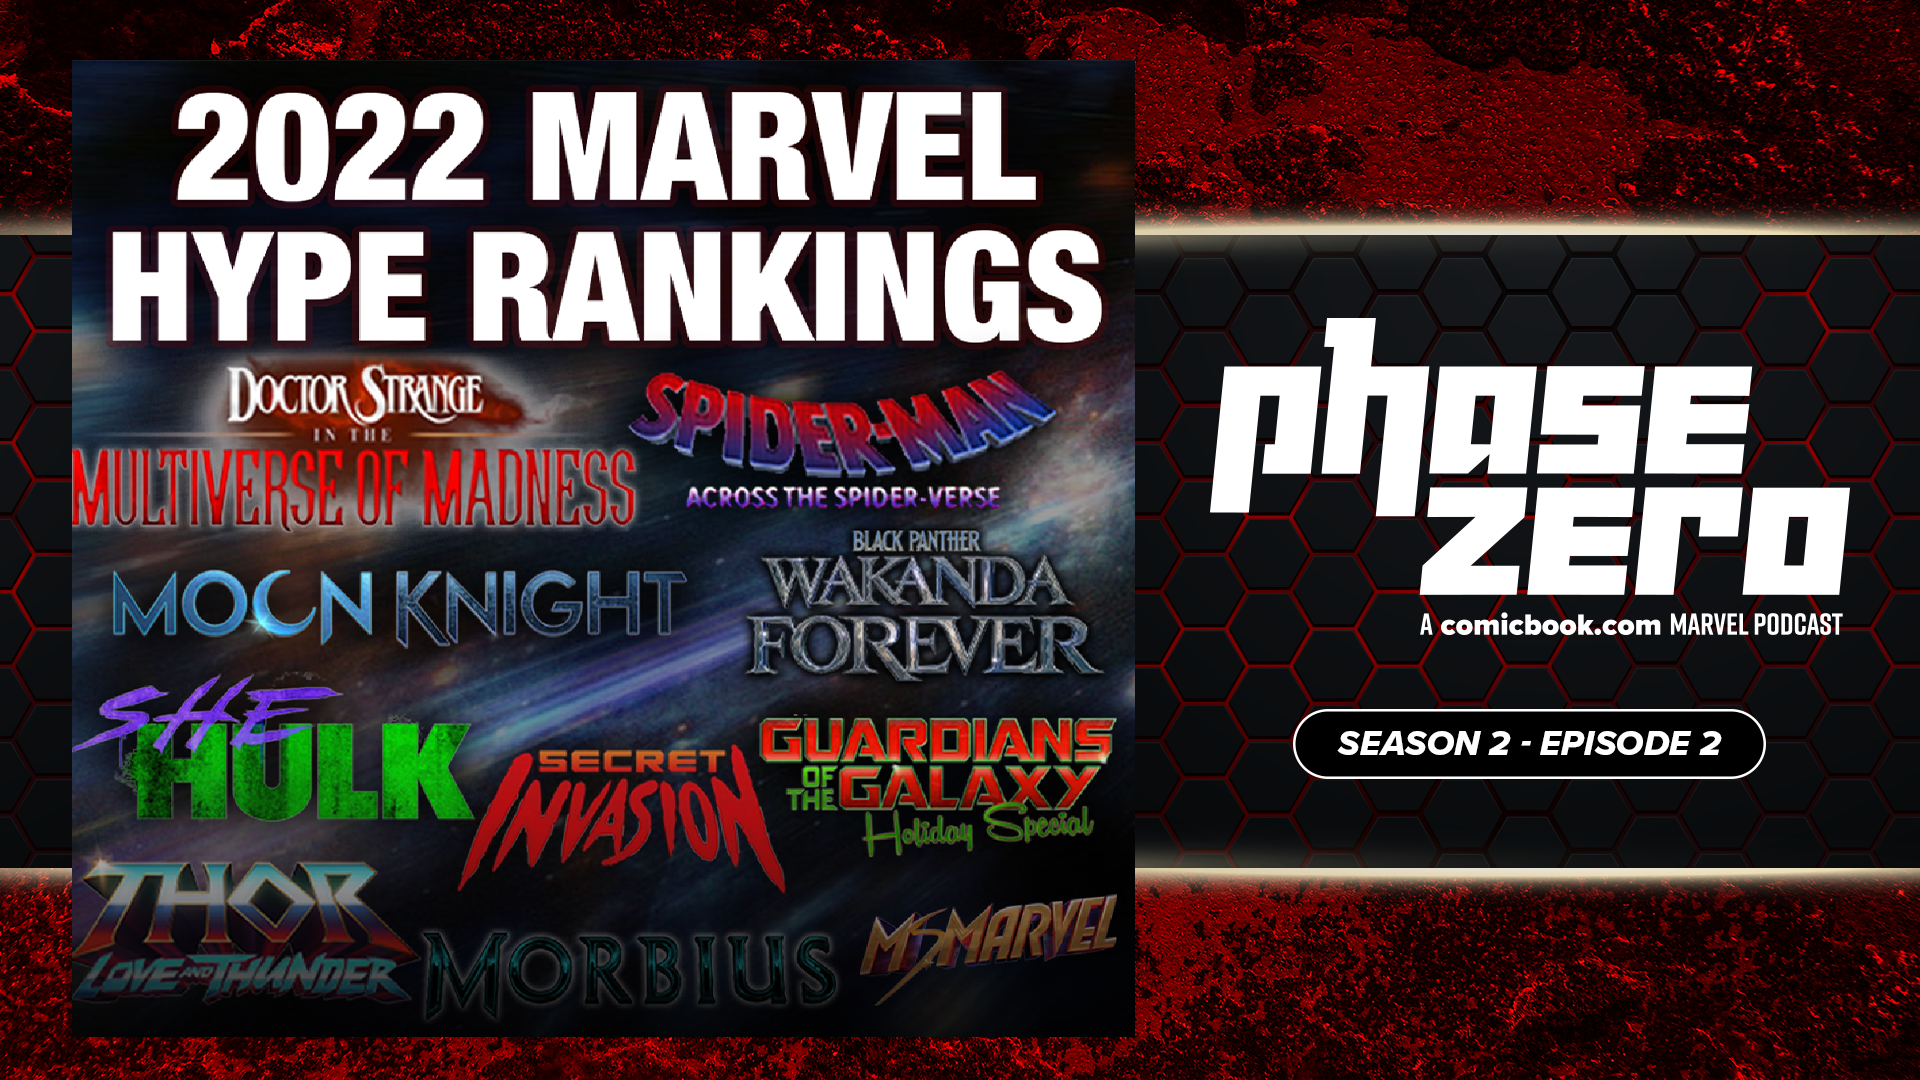 2022 Marvel Hype Rankings Revealed By Phase Zero